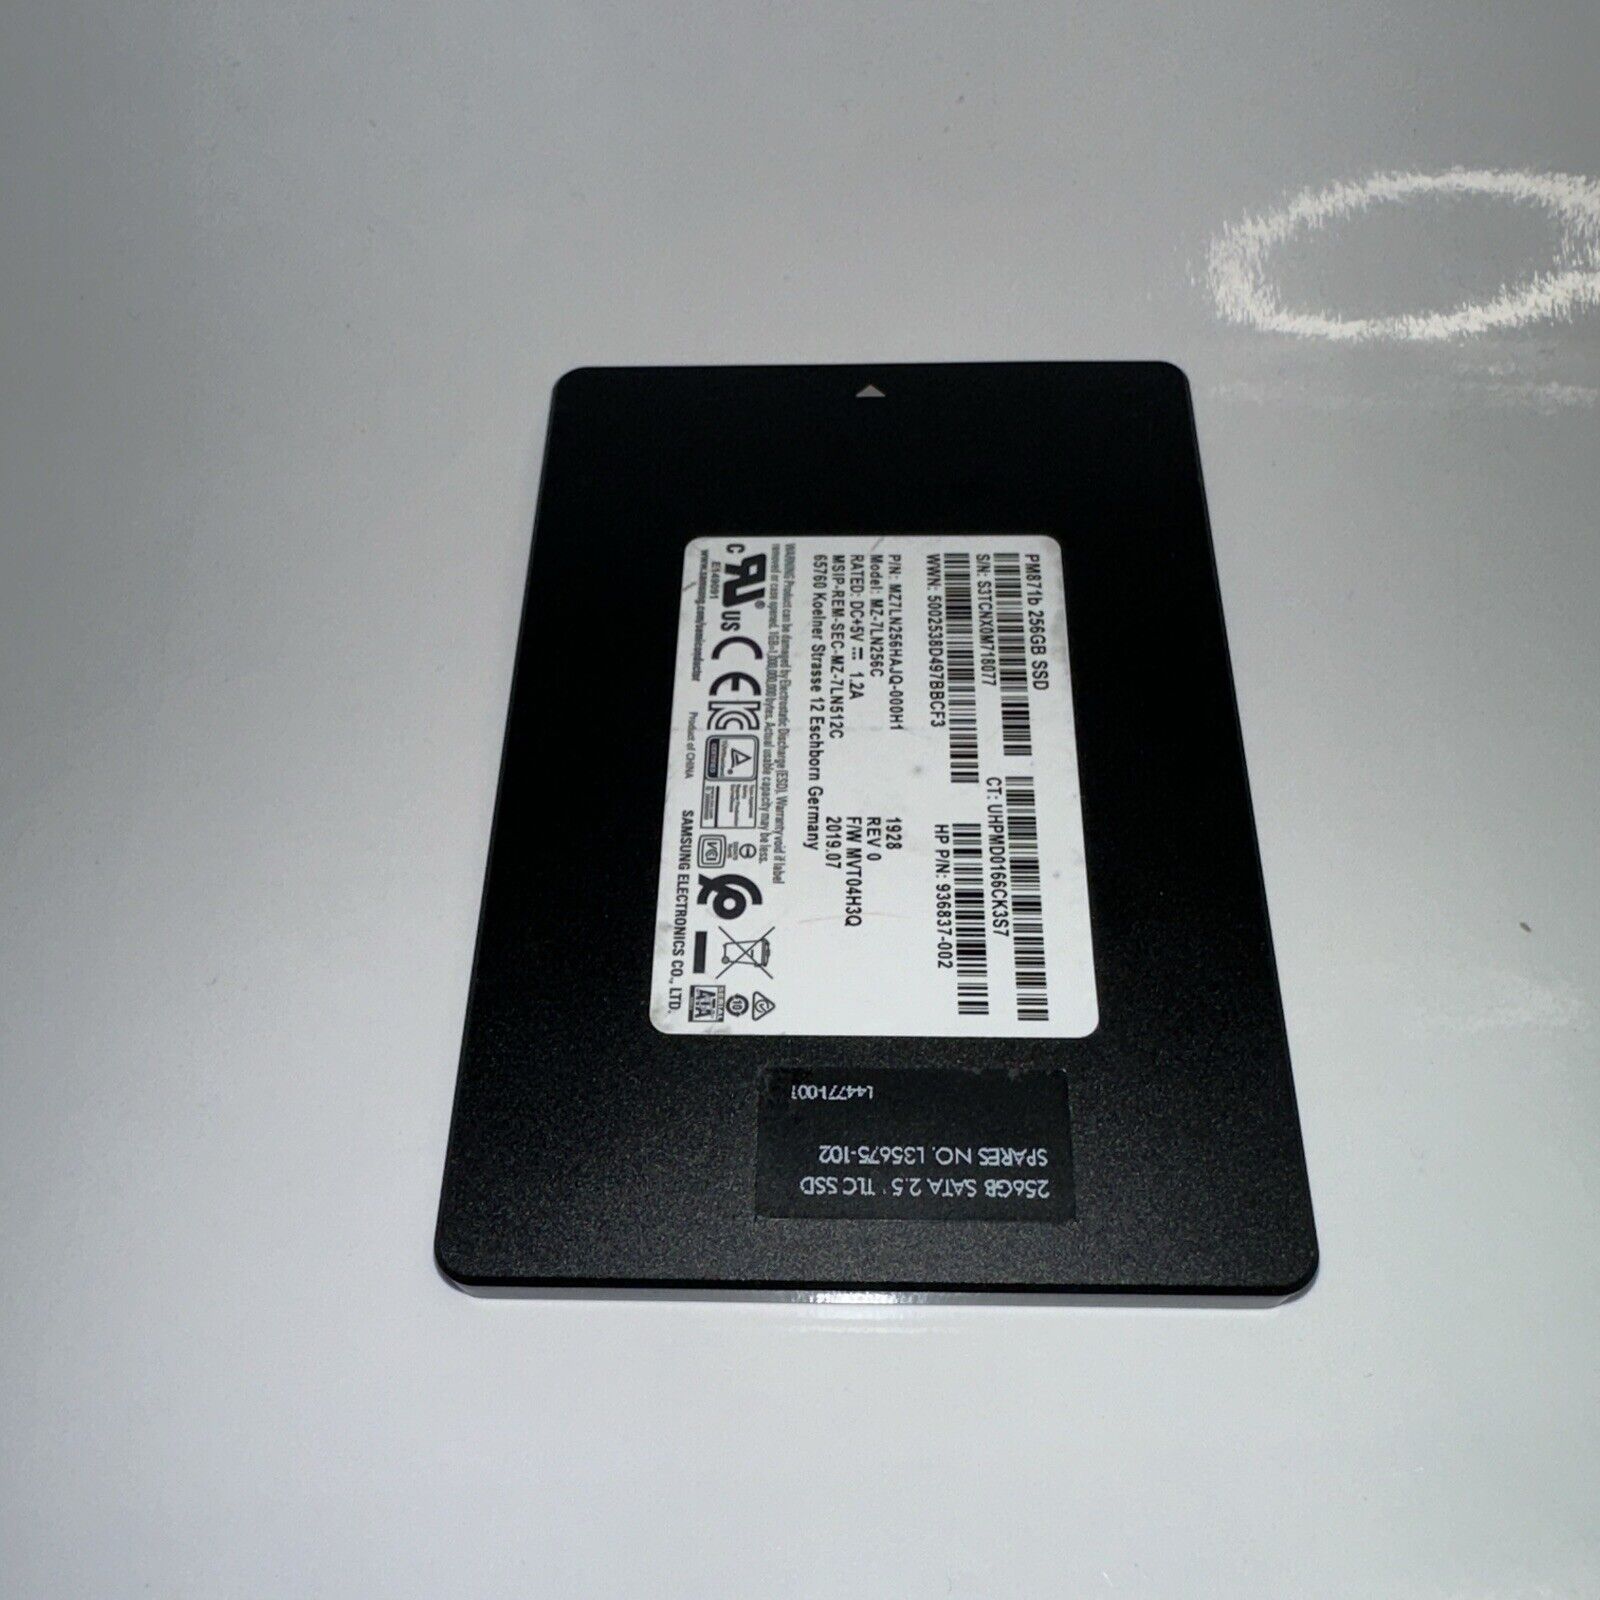 MZ-7LN256C Samsung PM871b Series 256GB TLC SATA 6Gbps 2.5-inch Internal SSD